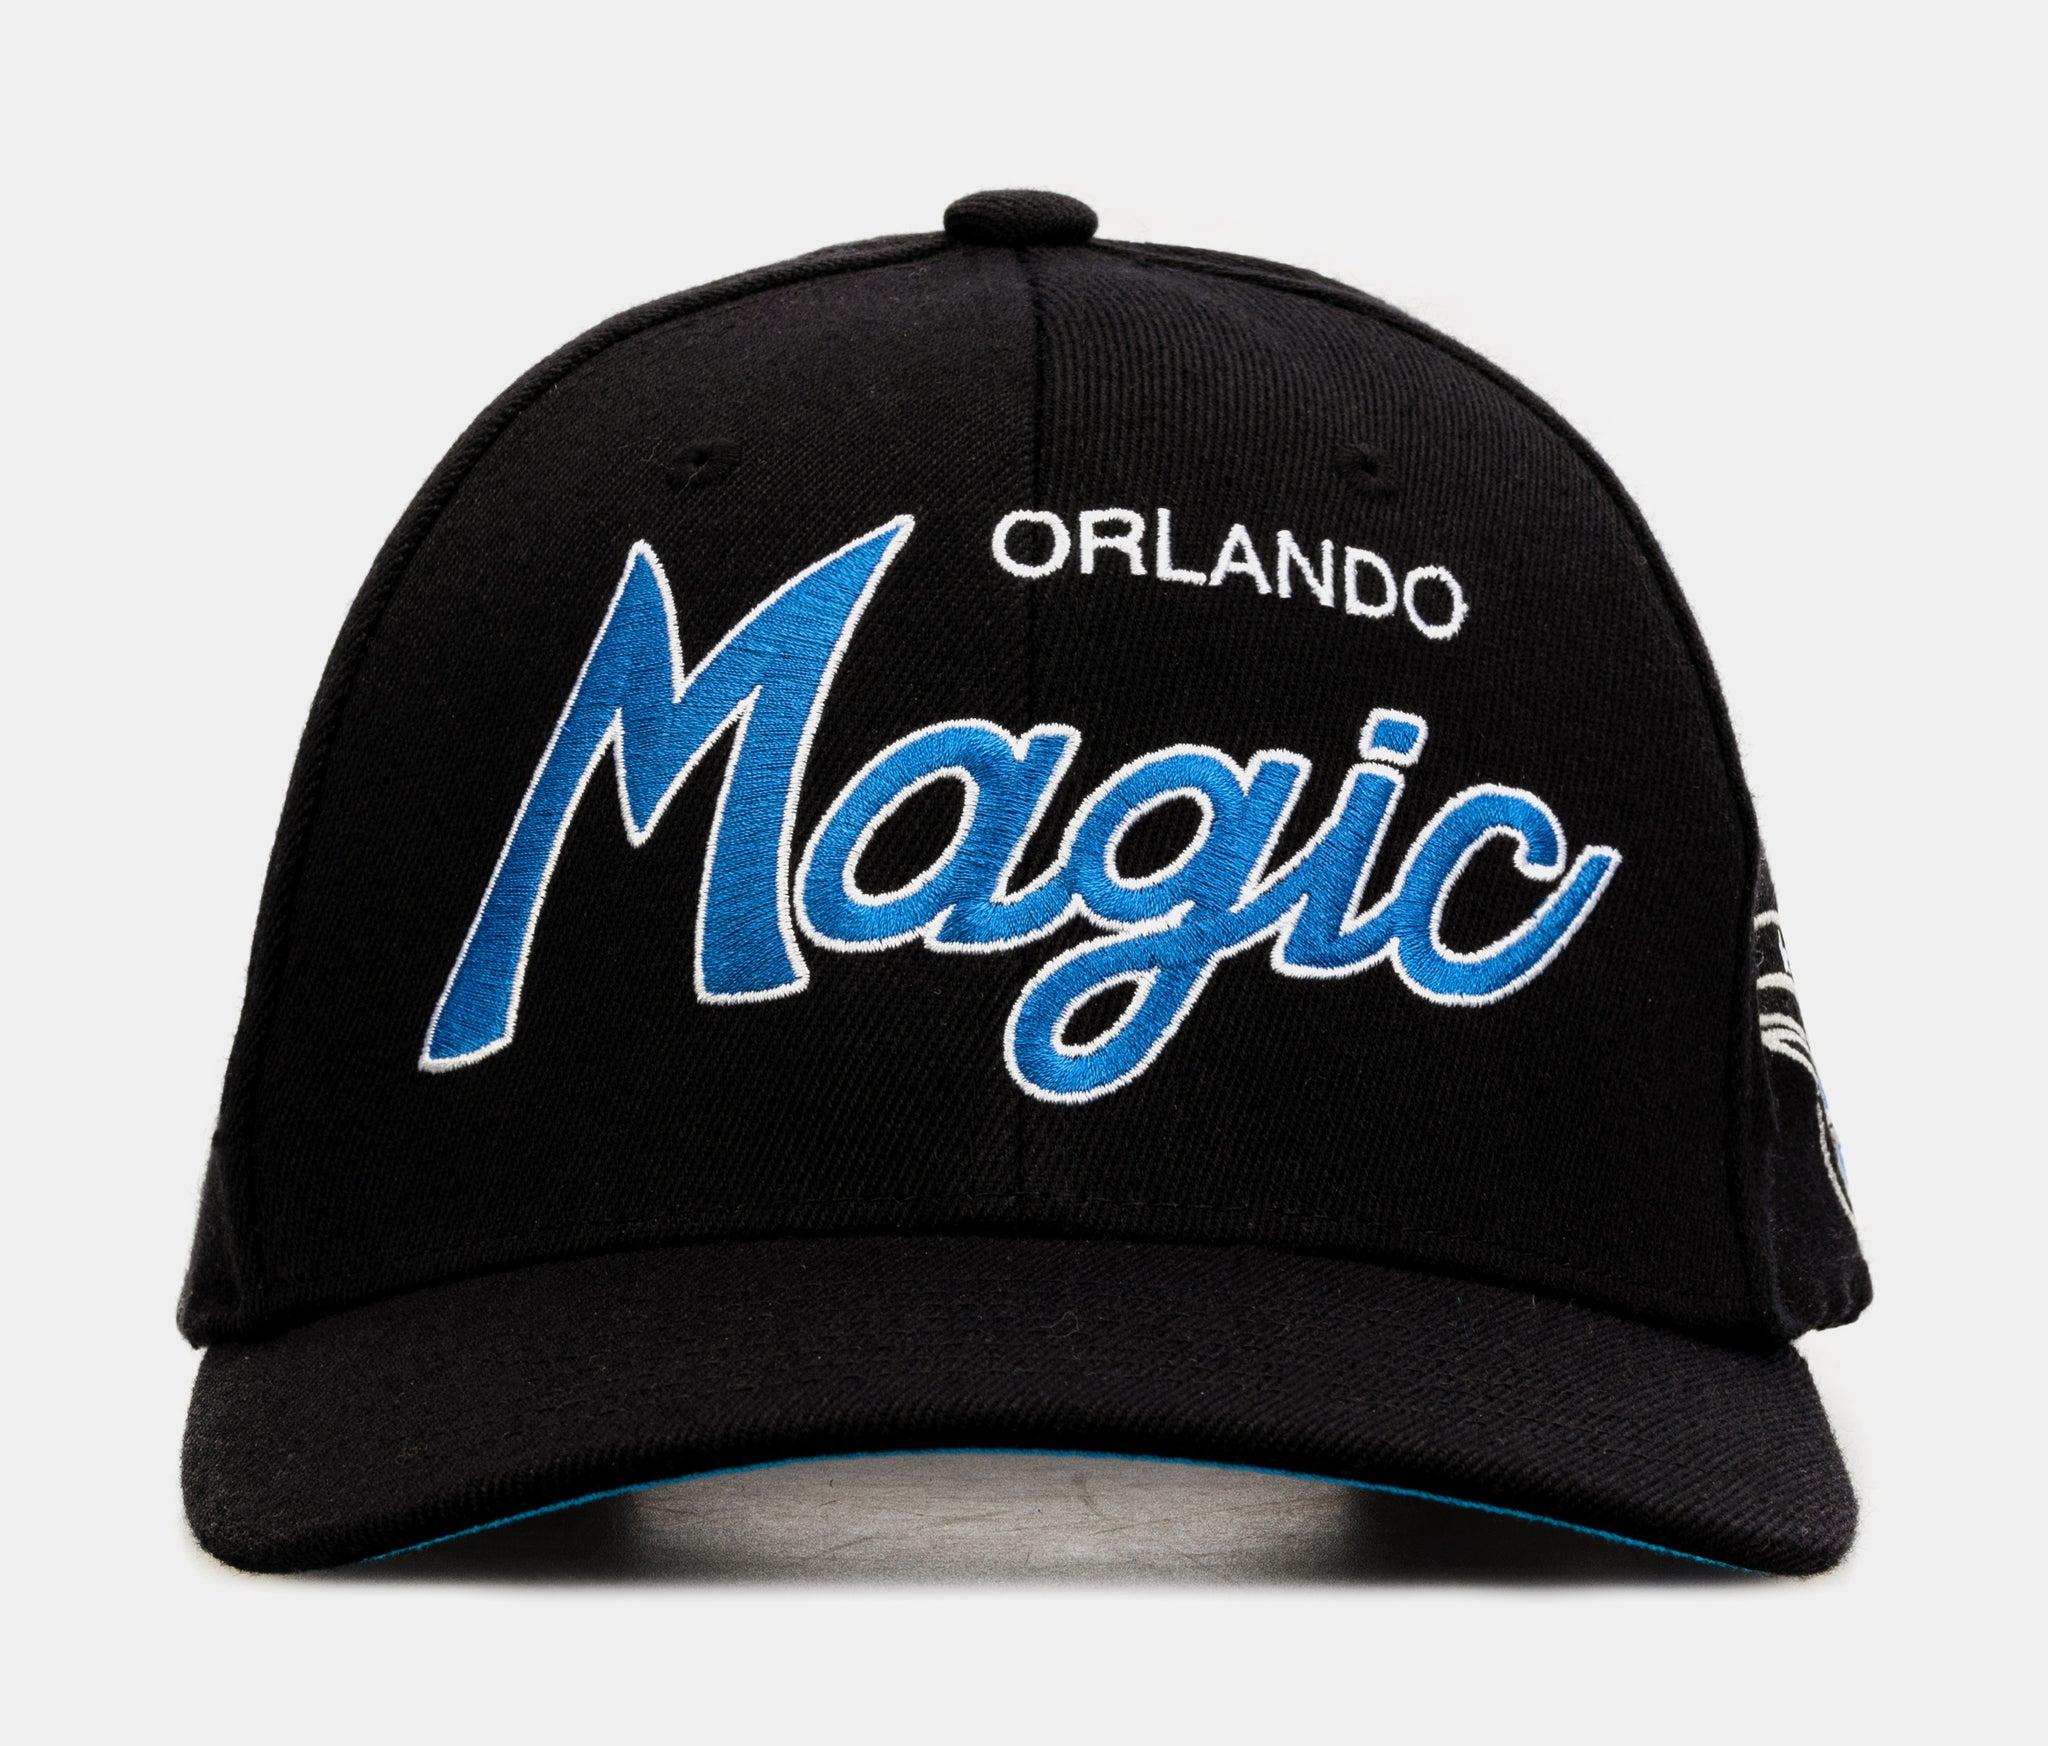 Orlando Magic Snapbacks, Magic Snapbacks, Trucker Hats